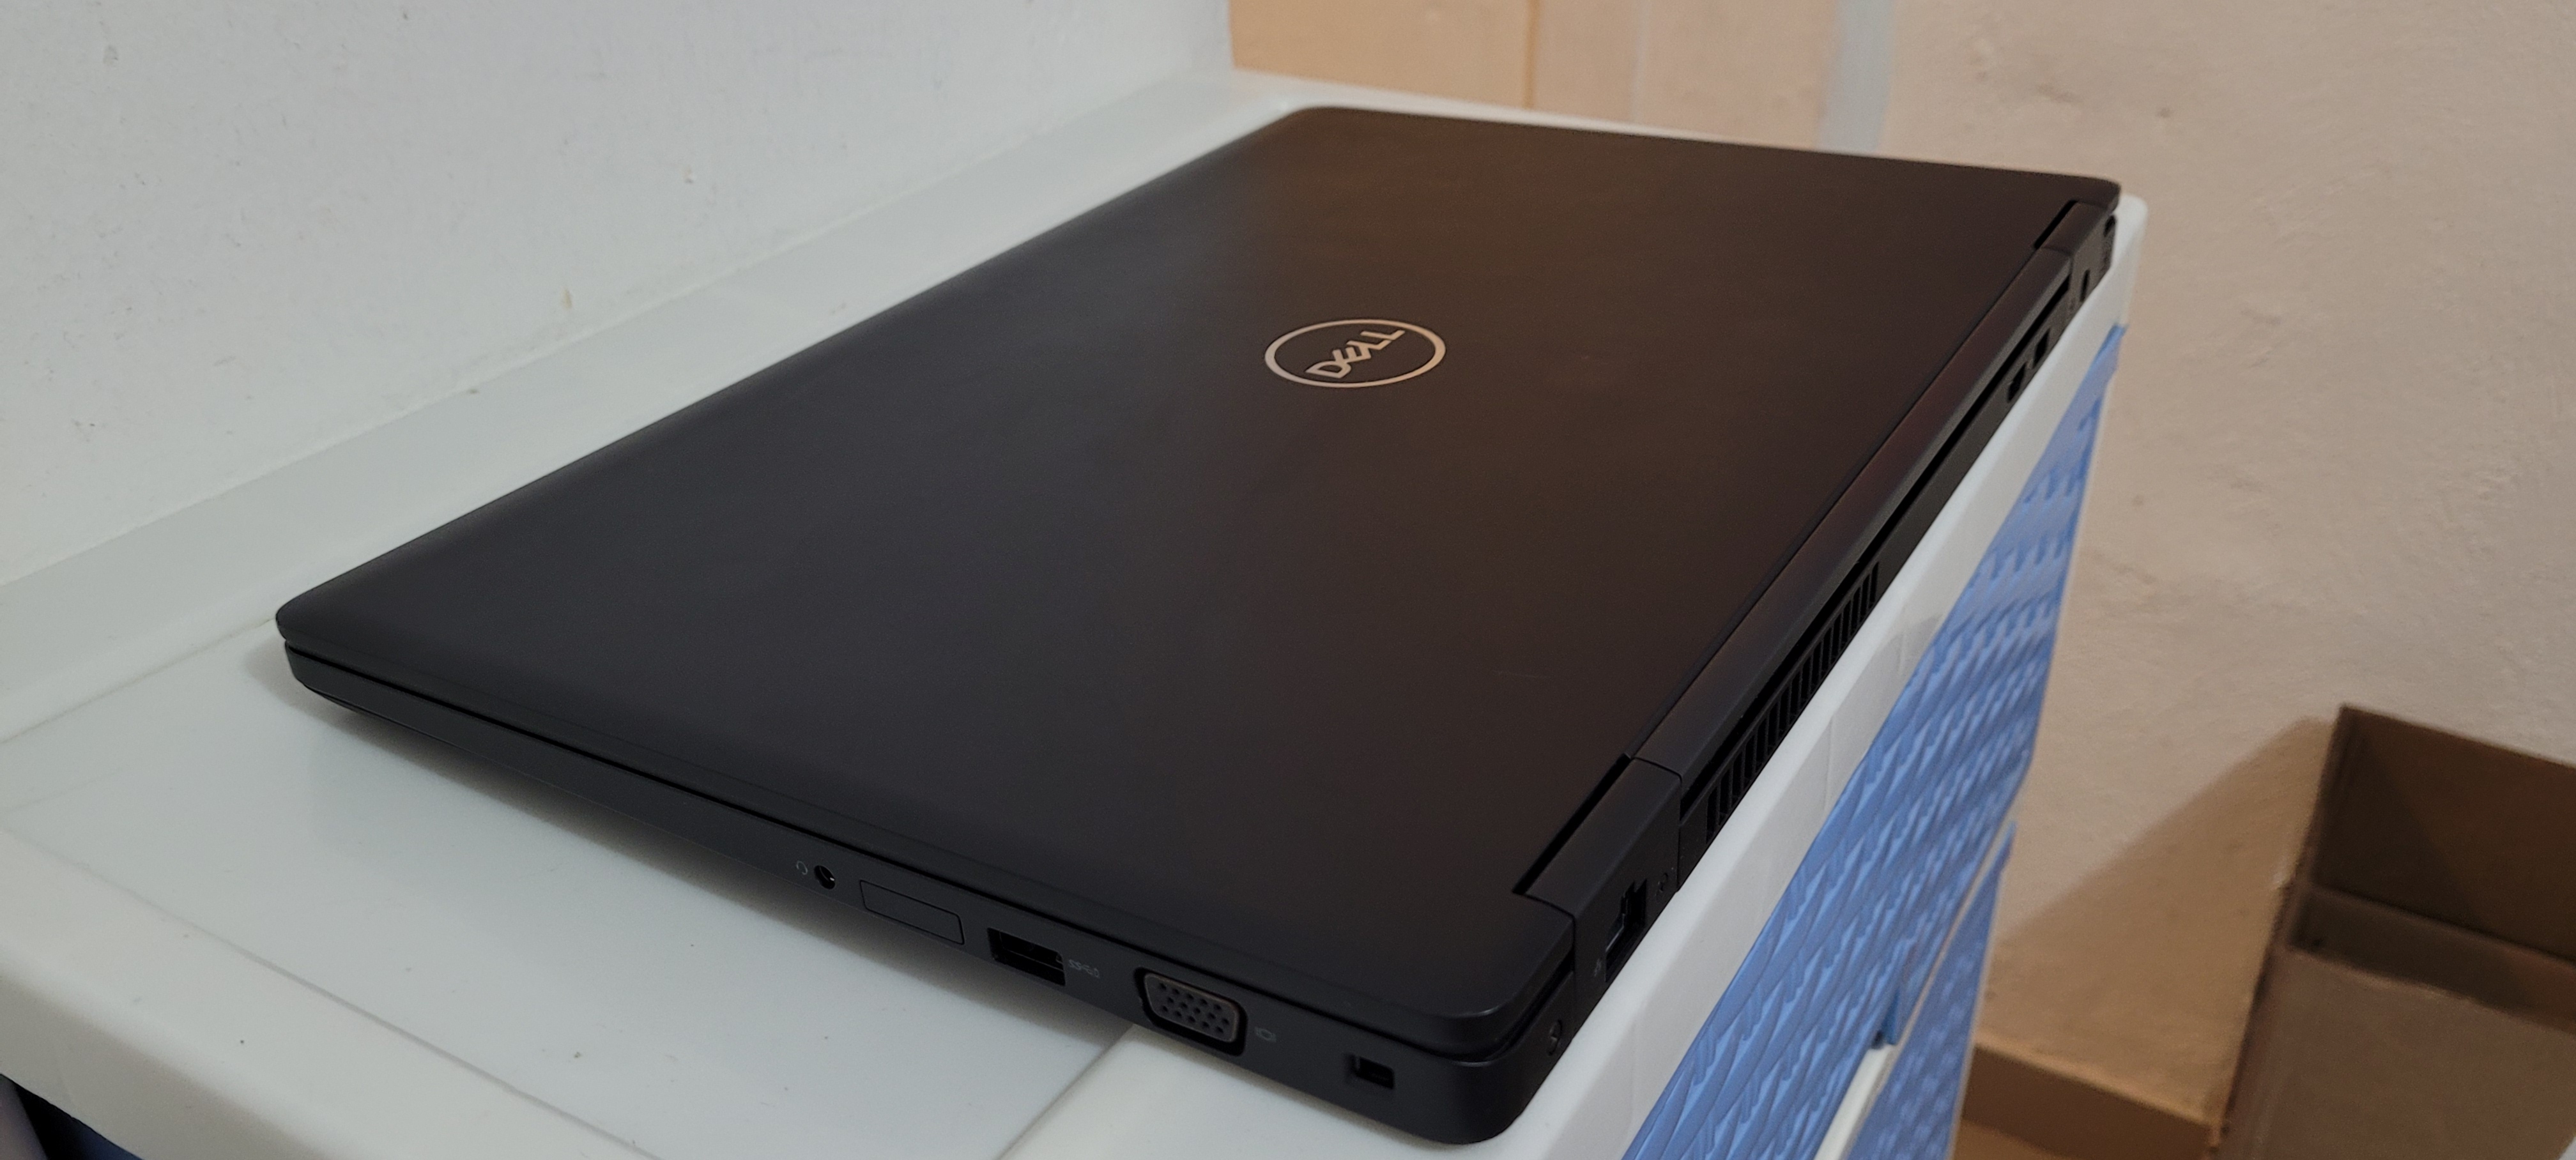 computadoras y laptops - Dell Slim 14 Pulg Core i7 6ta Gen Ram 8gb ddr4 Disco 256gb SSD Wifi bluetoth 2